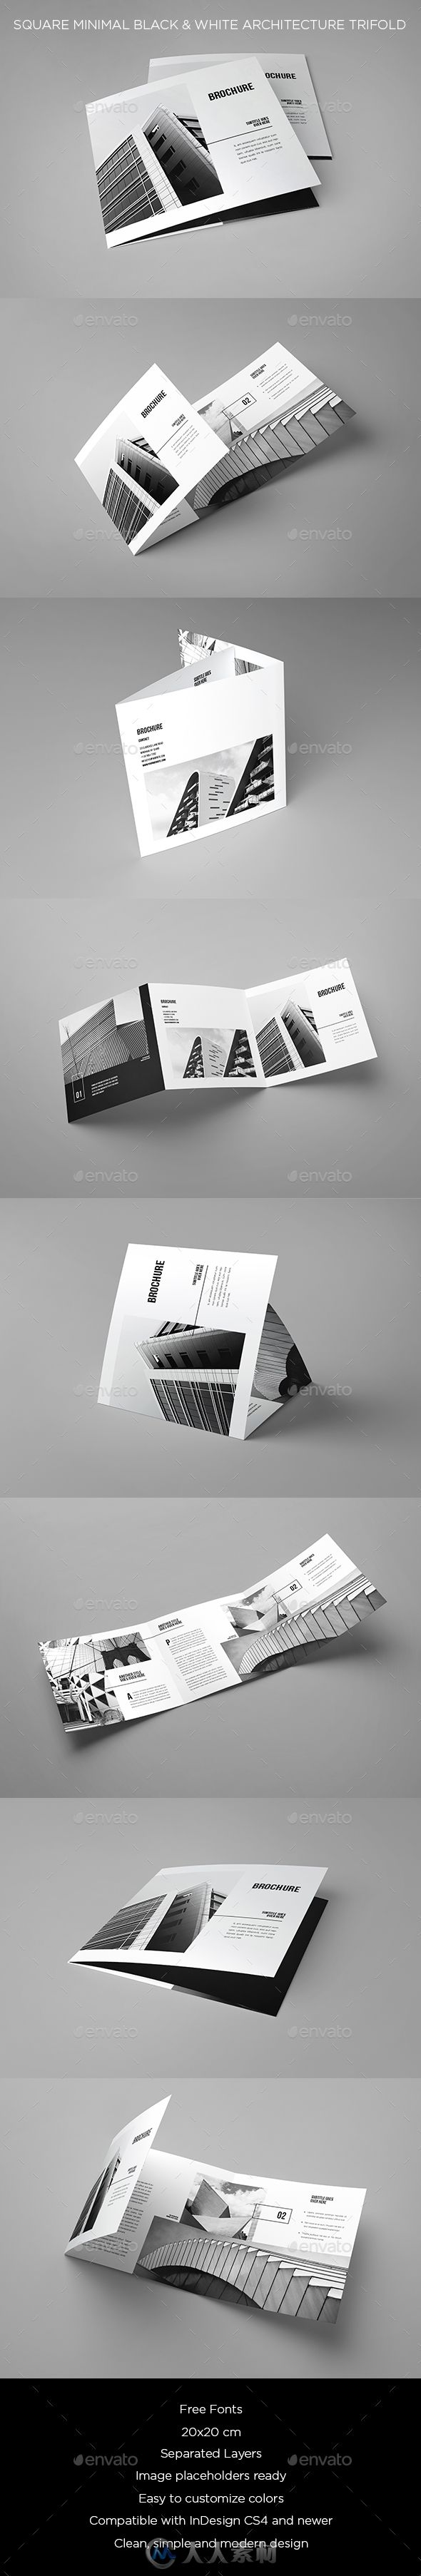 现代简单的迷你黑白风格建筑设计手册indesign排版模板